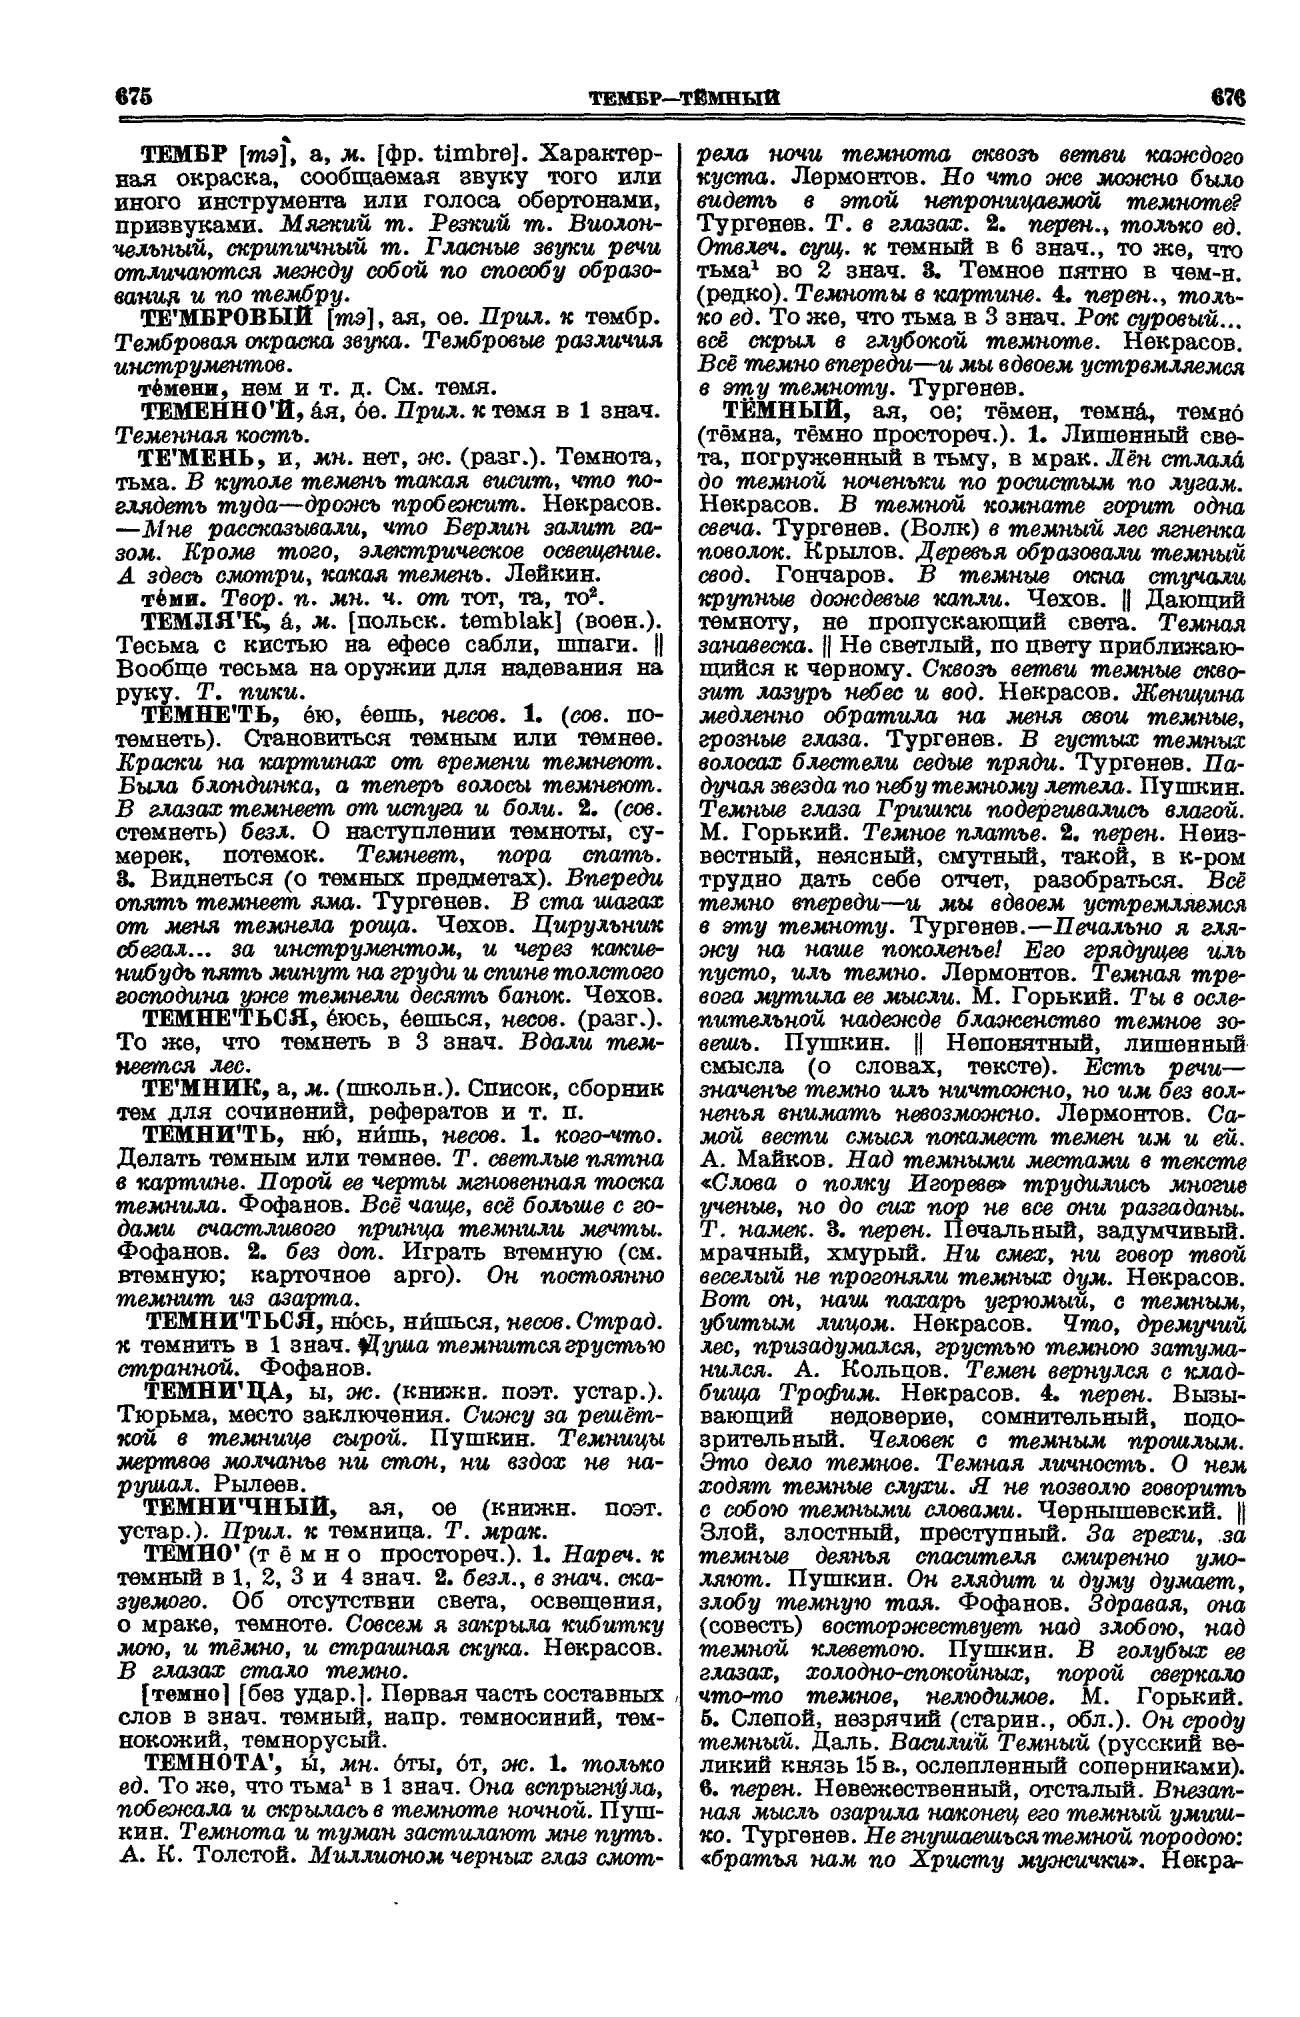 Фотокопия pdf / скан страницы 338 толкового словаря Ушакова (том 1)